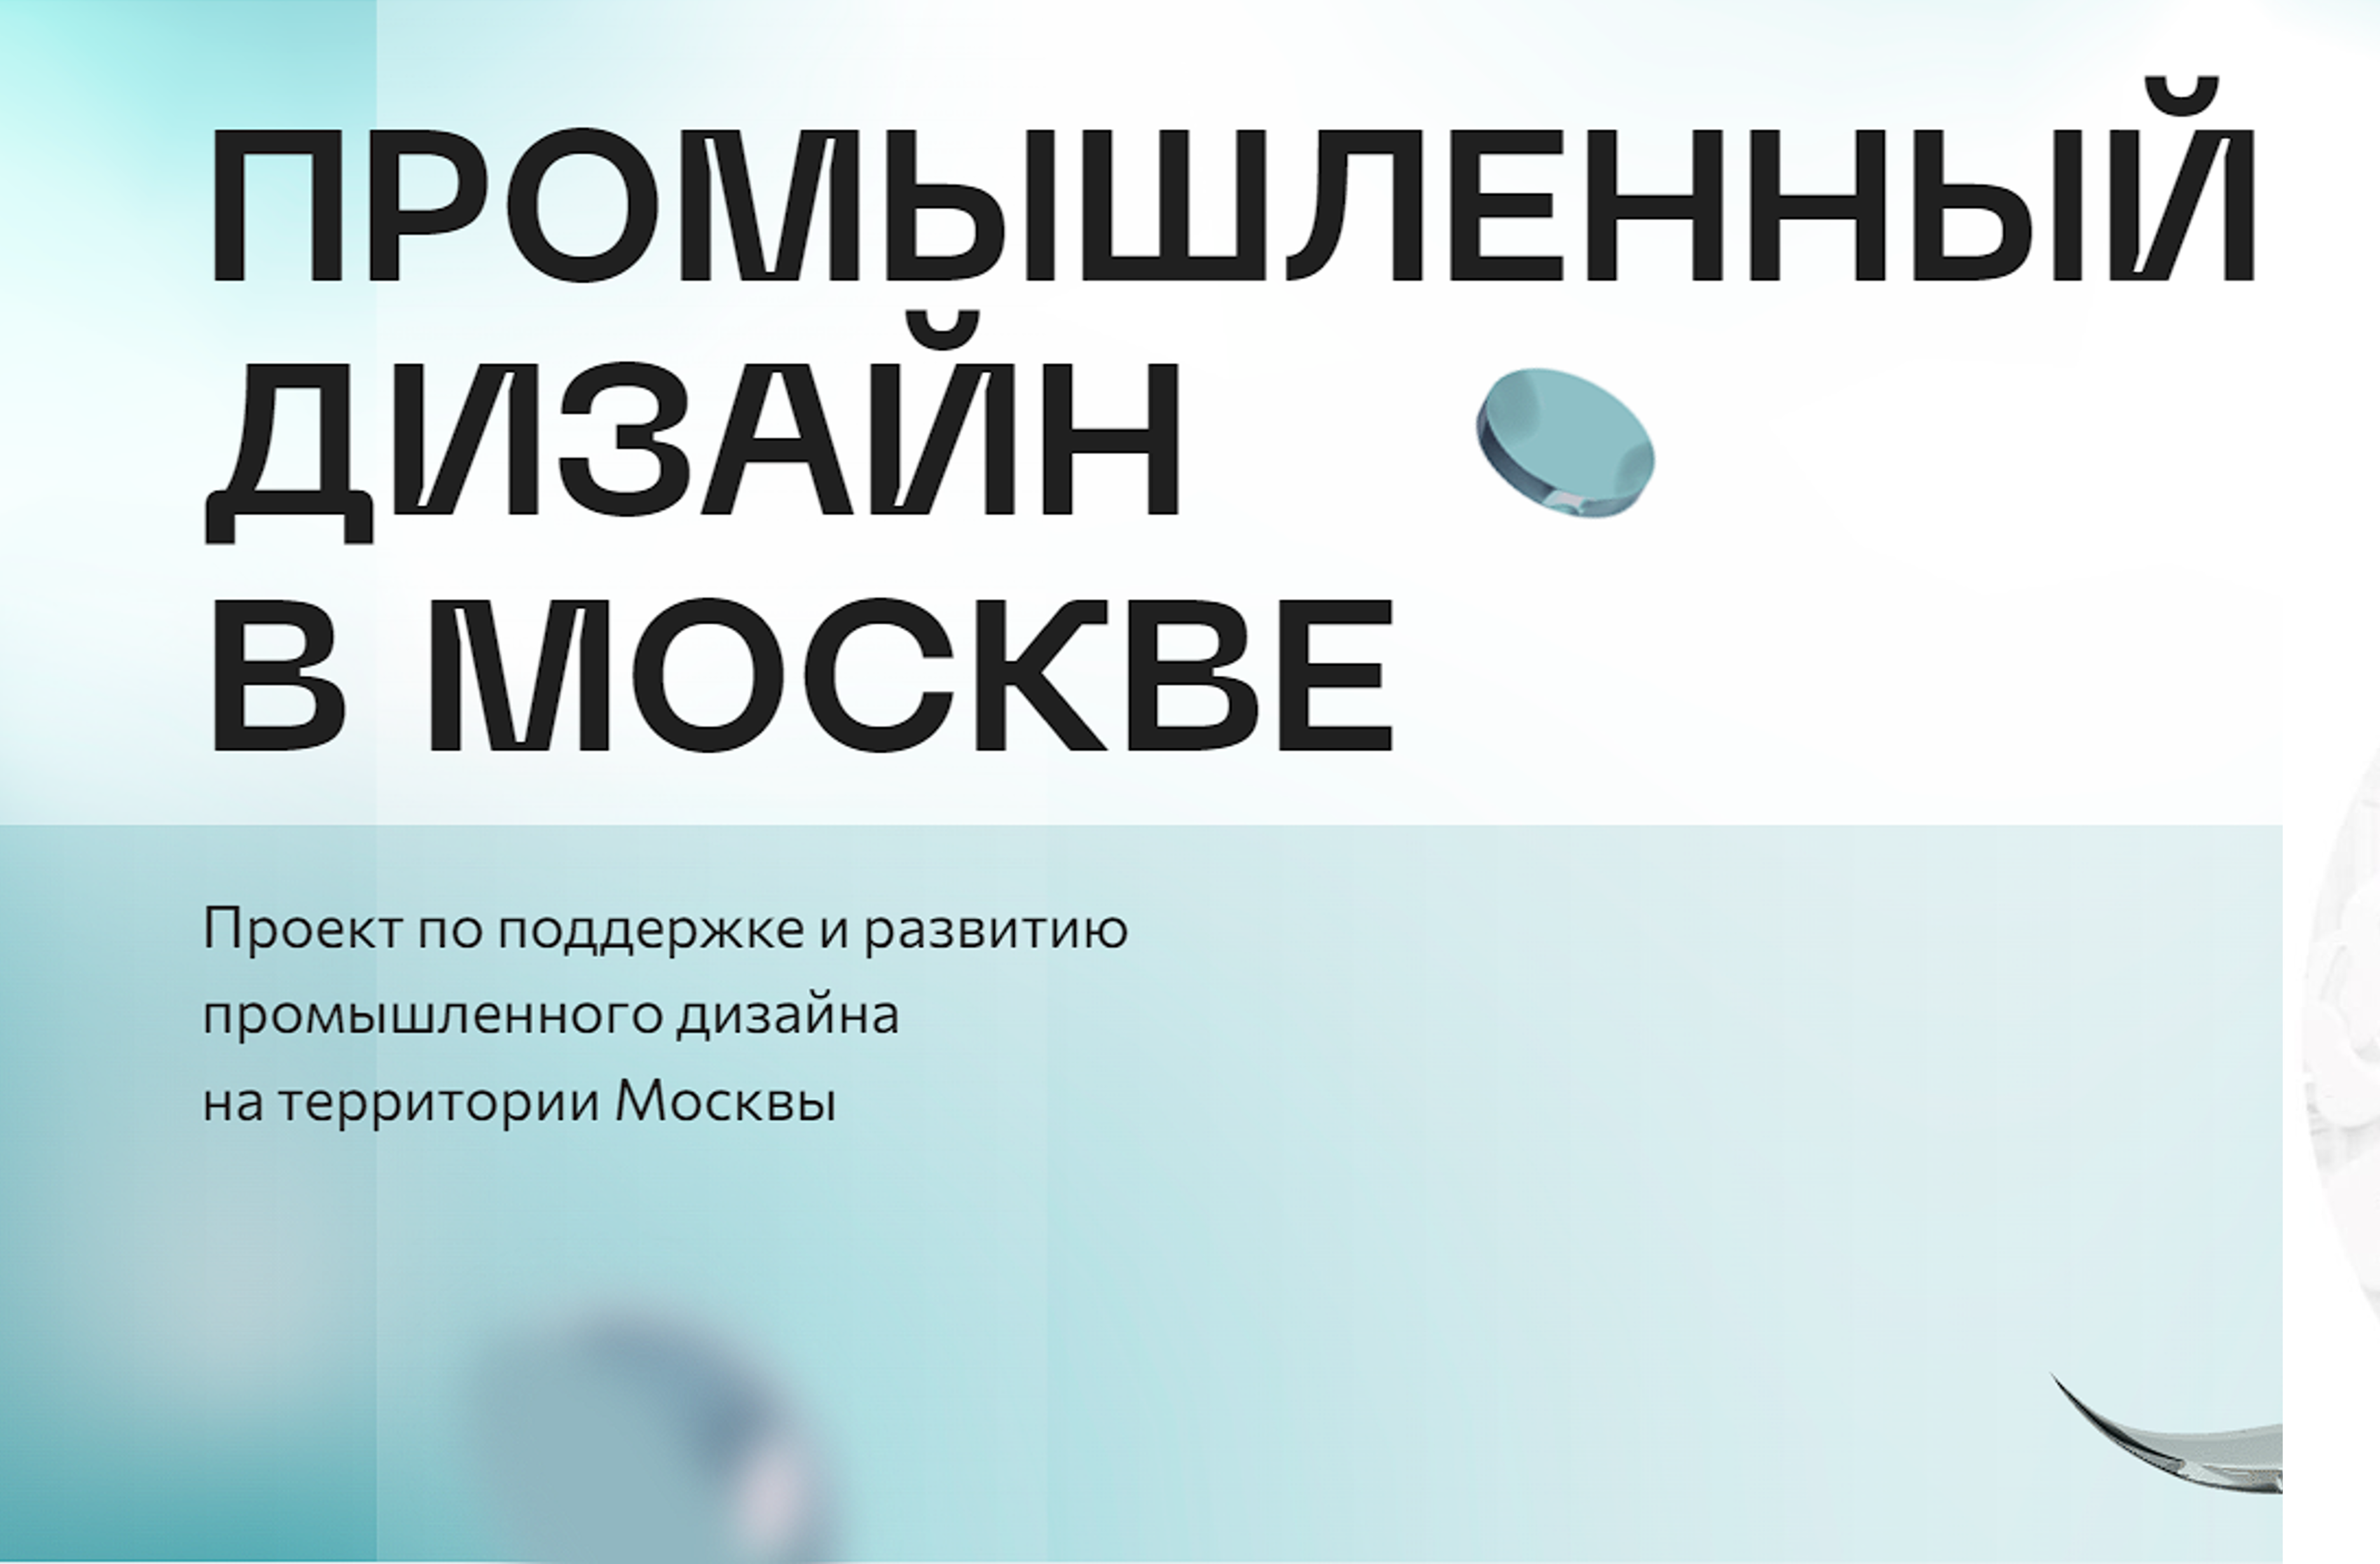 Поддержите TECHNORED в премии «Лучший промышленный дизайн России»!